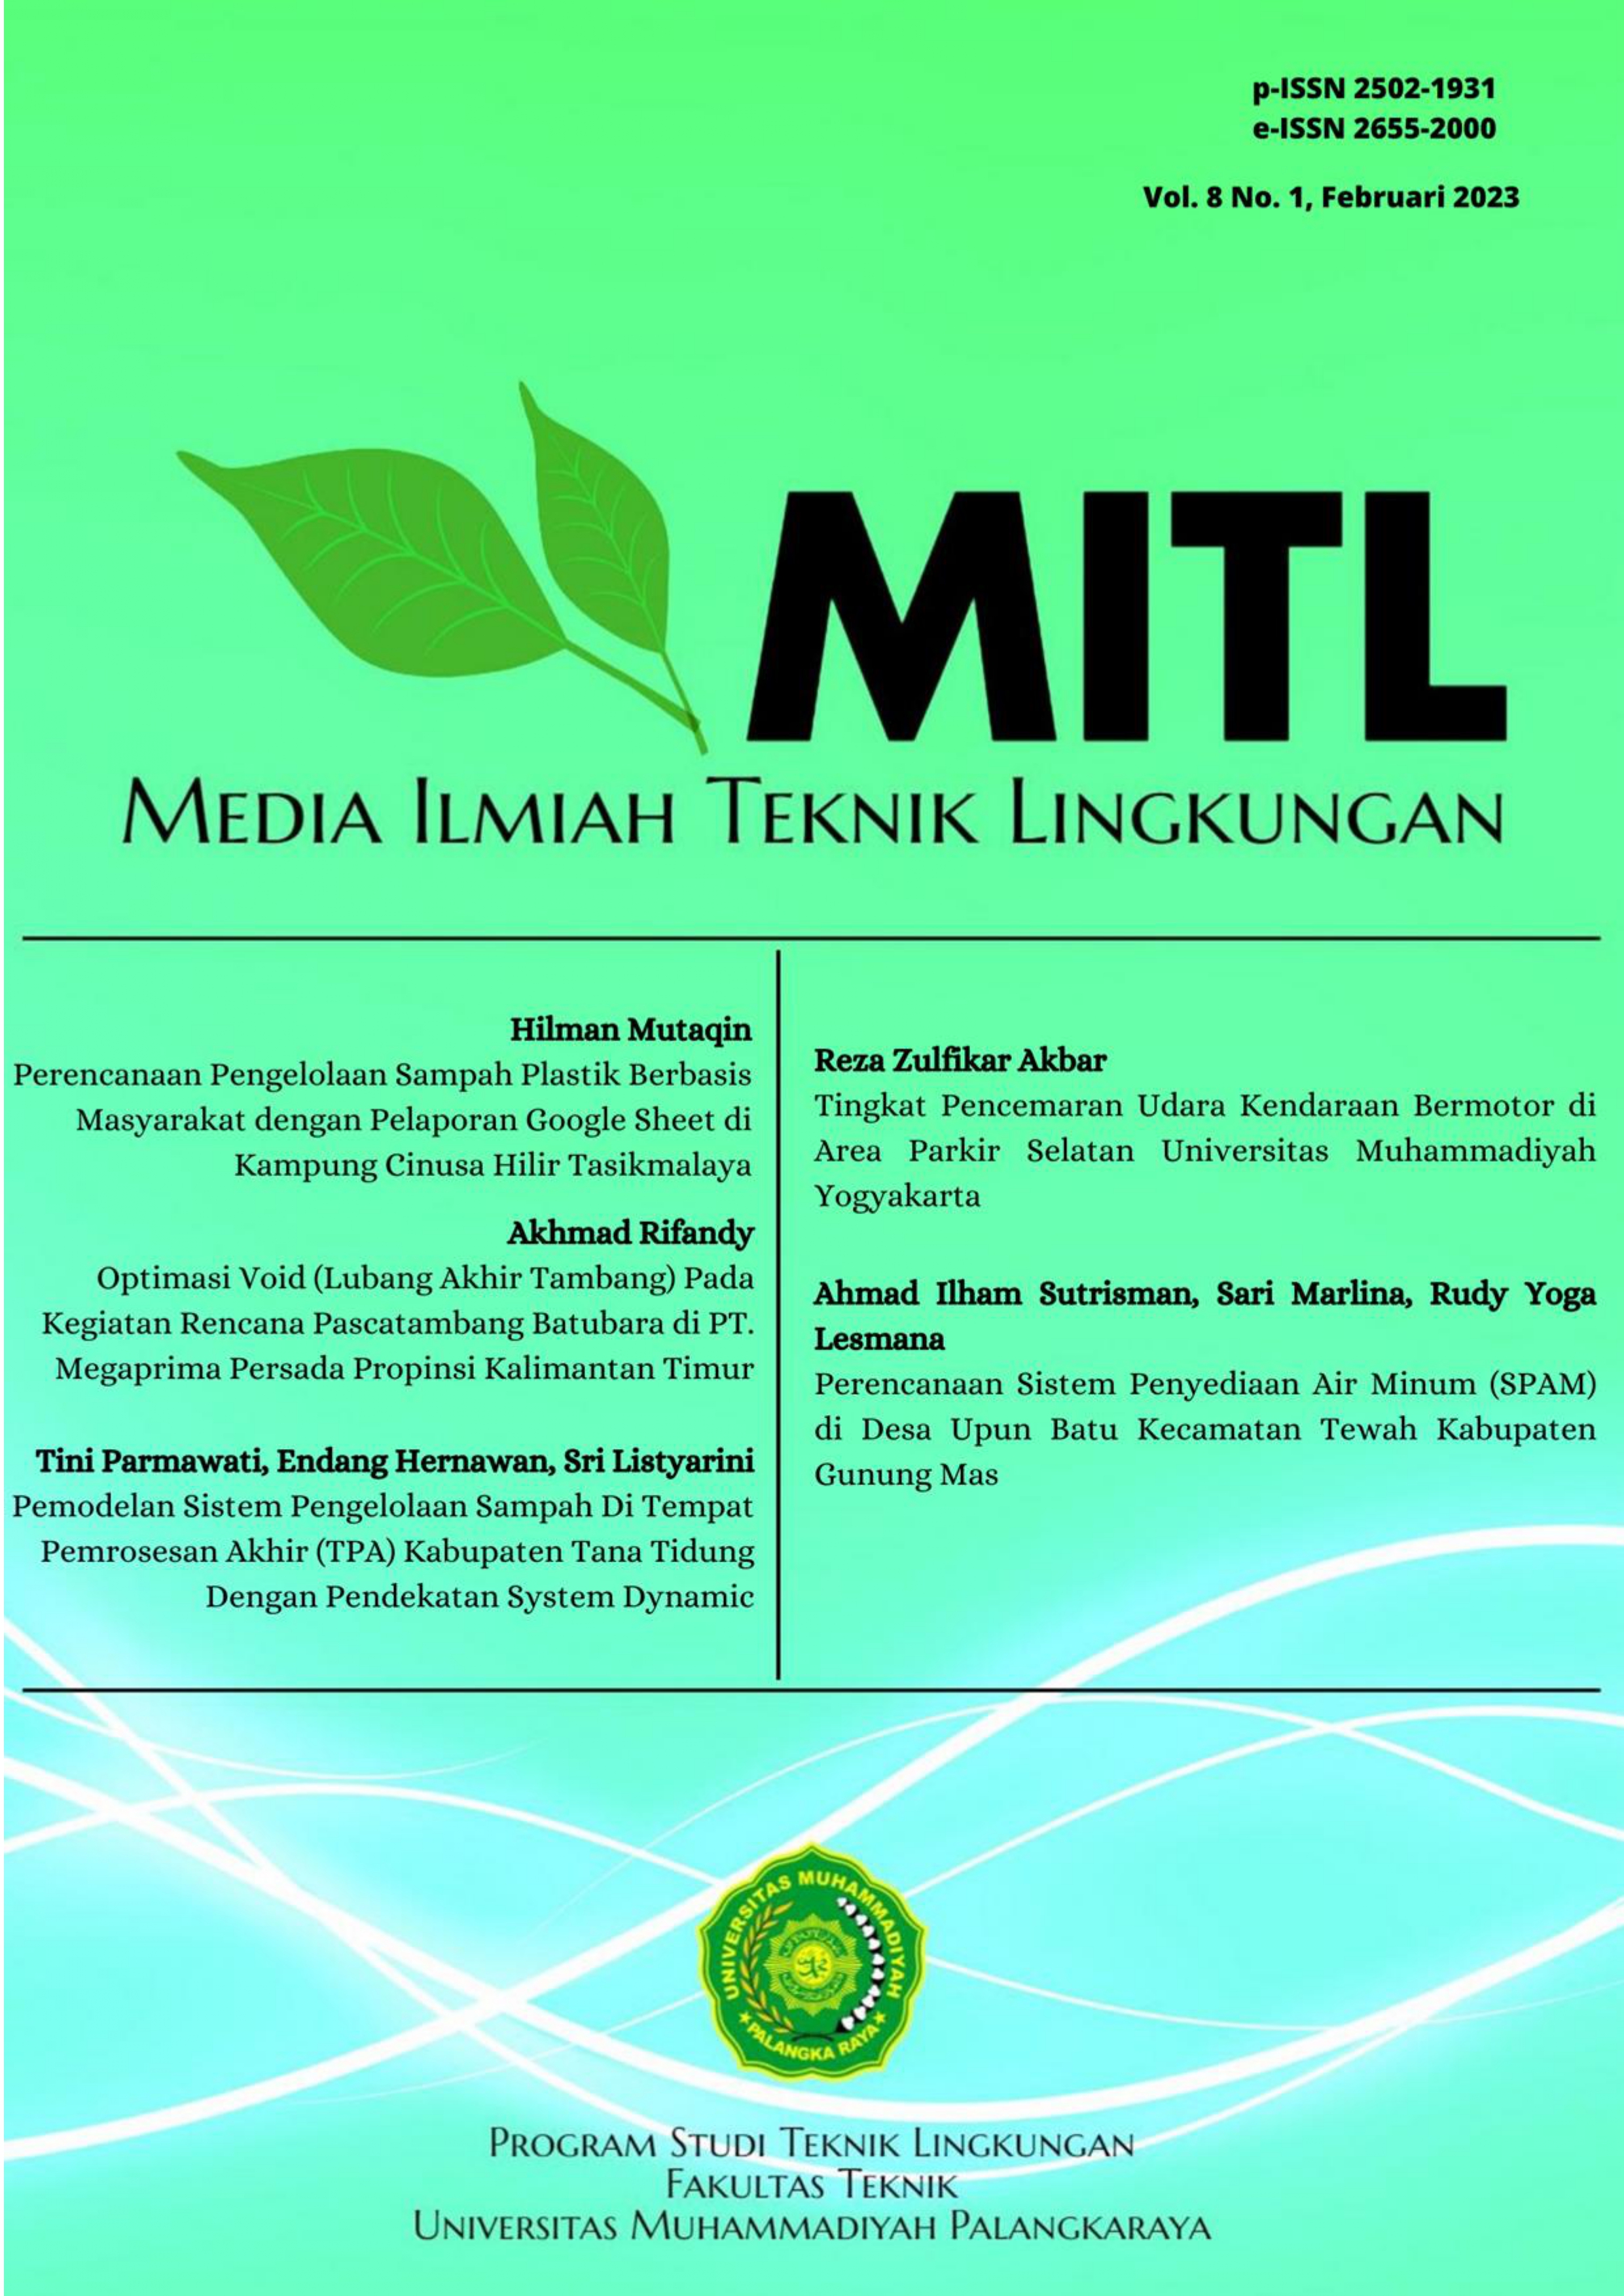 					View Vol. 8 No. 1 (2023): Media Ilmiah Teknik Lingkungan (MITL)
				